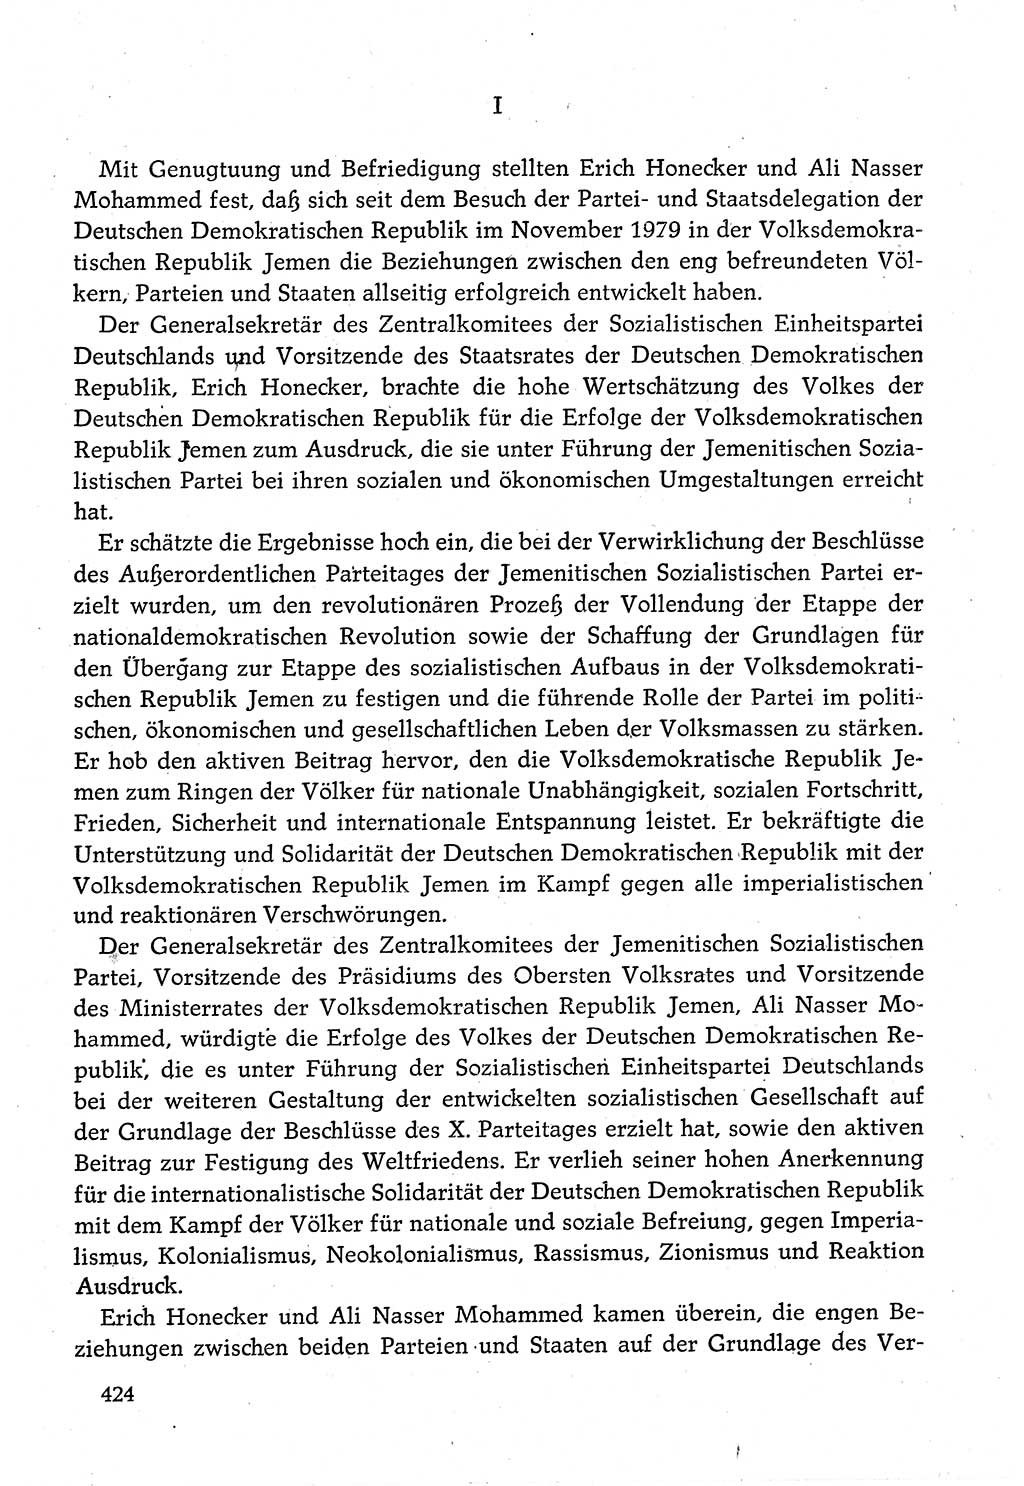 Dokumente der Sozialistischen Einheitspartei Deutschlands (SED) [Deutsche Demokratische Republik (DDR)] 1980-1981, Seite 424 (Dok. SED DDR 1980-1981, S. 424)